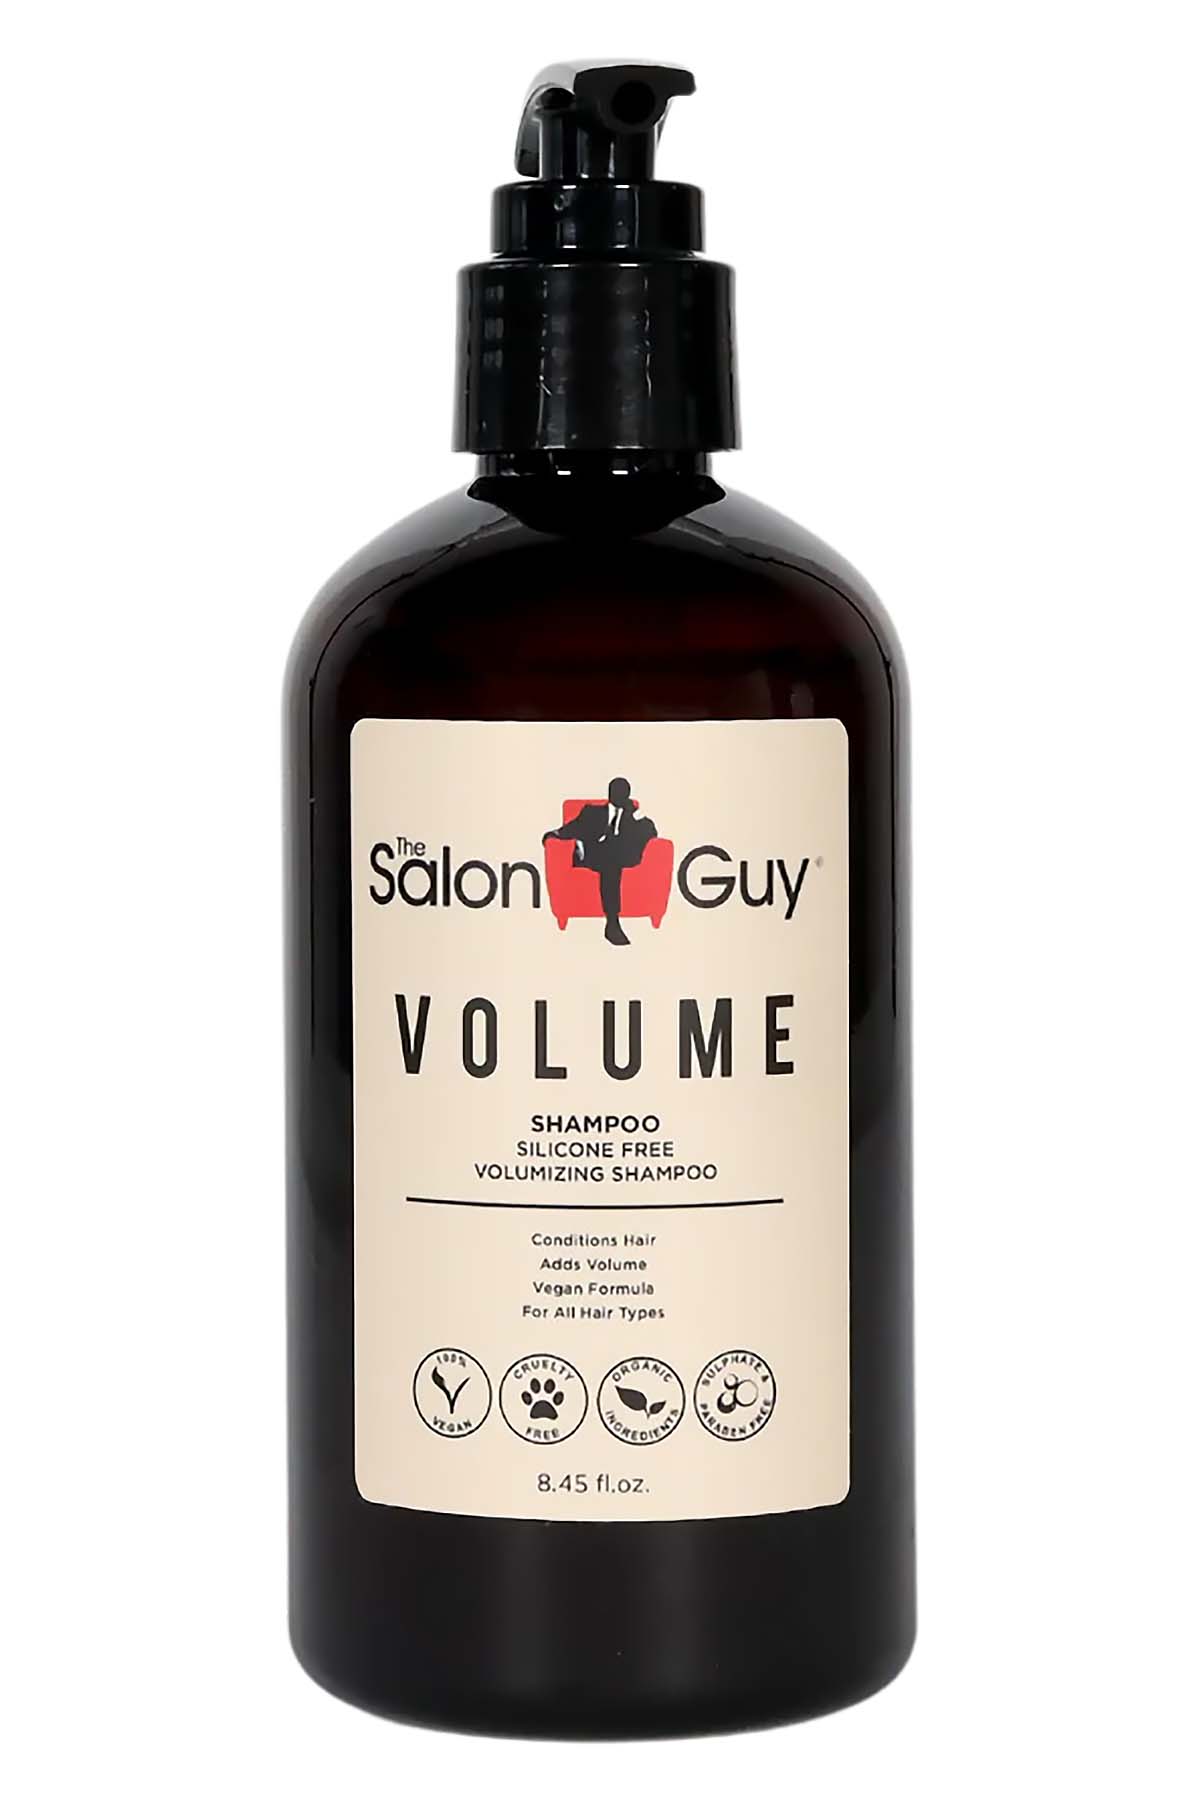 TheSalonGuy Volume Shampoo